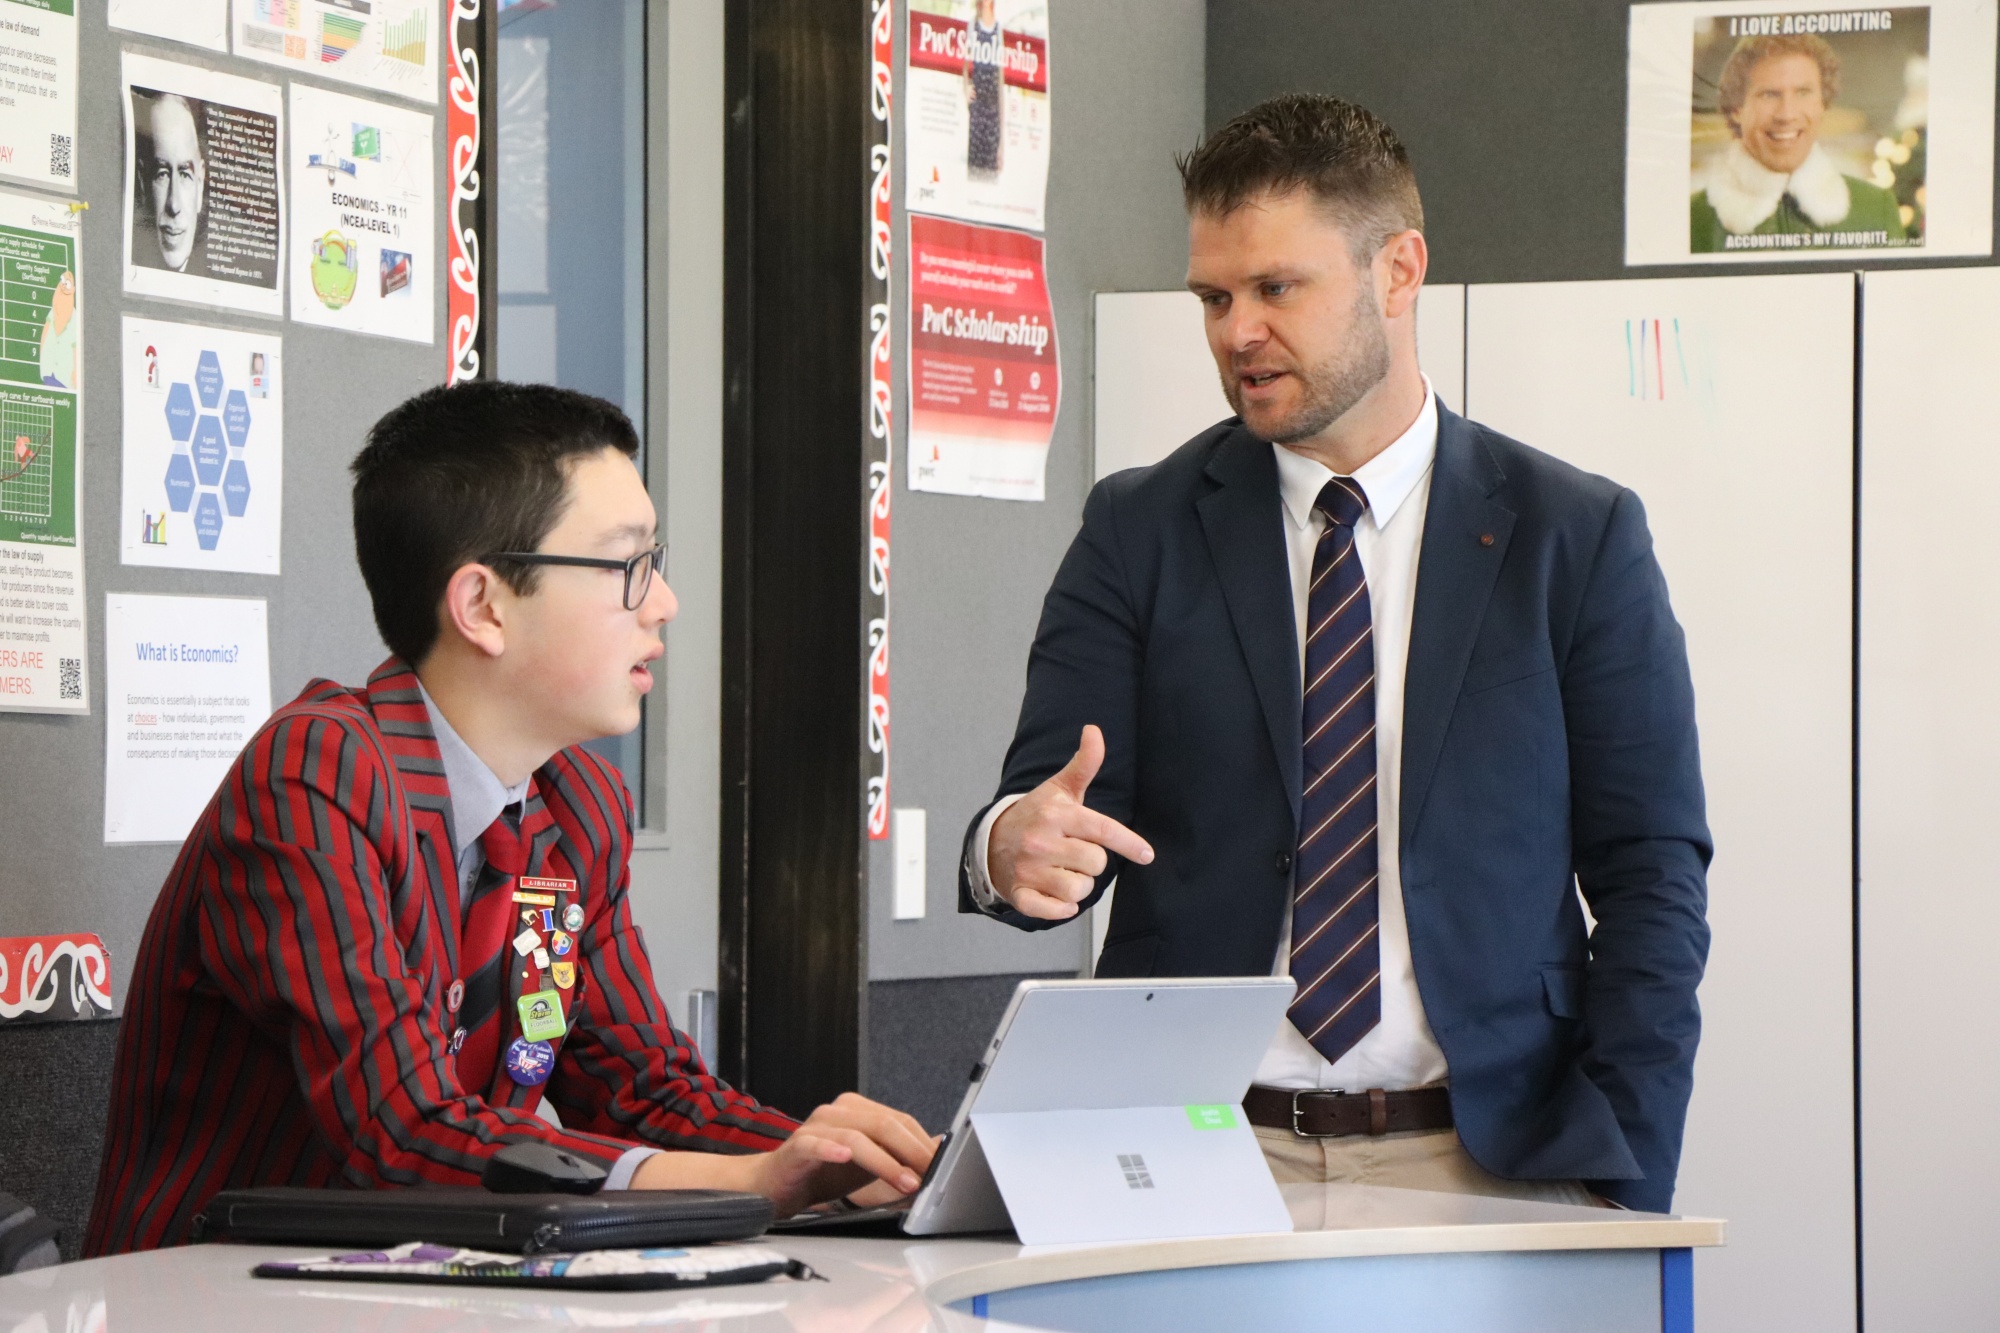 Trải nghiệm phương pháp giáo dục tiên tiến tại Triển lãm Giáo dục New Zealand